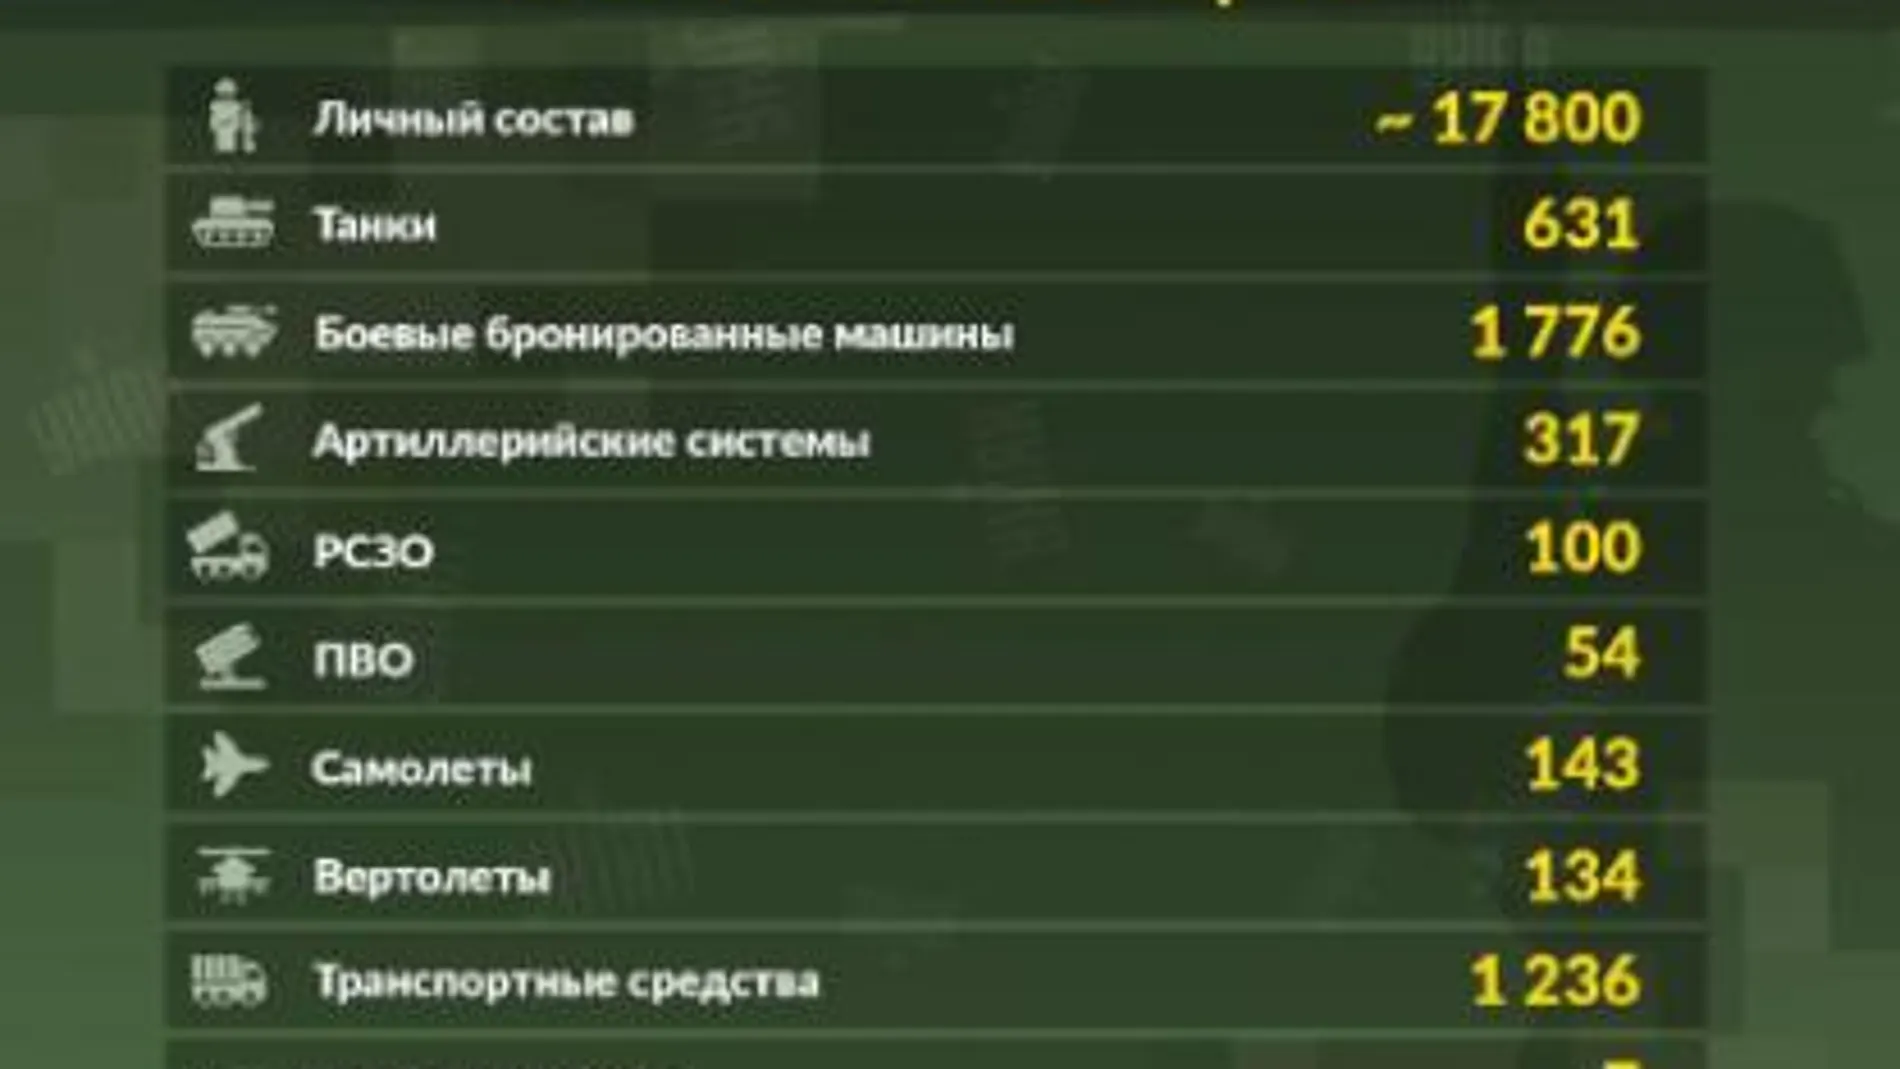 Cifras de bajas publicadas por la Inteligecia ucraniana